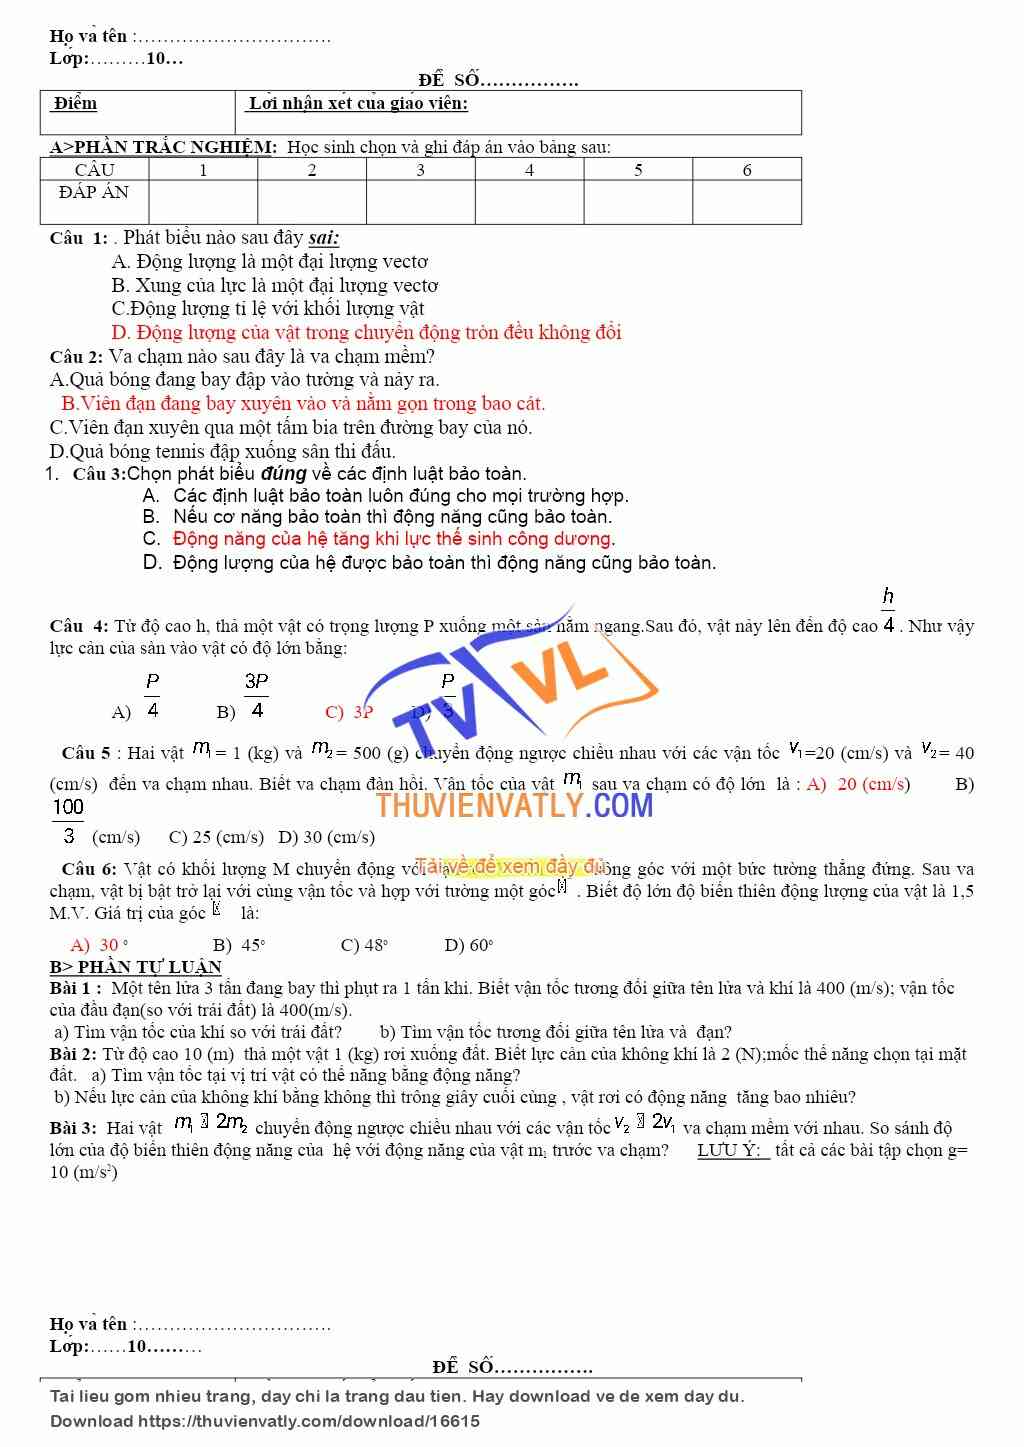 Bài kiểm tra 1 tiết thứ nhất trong HK2 của Lý 10 NC